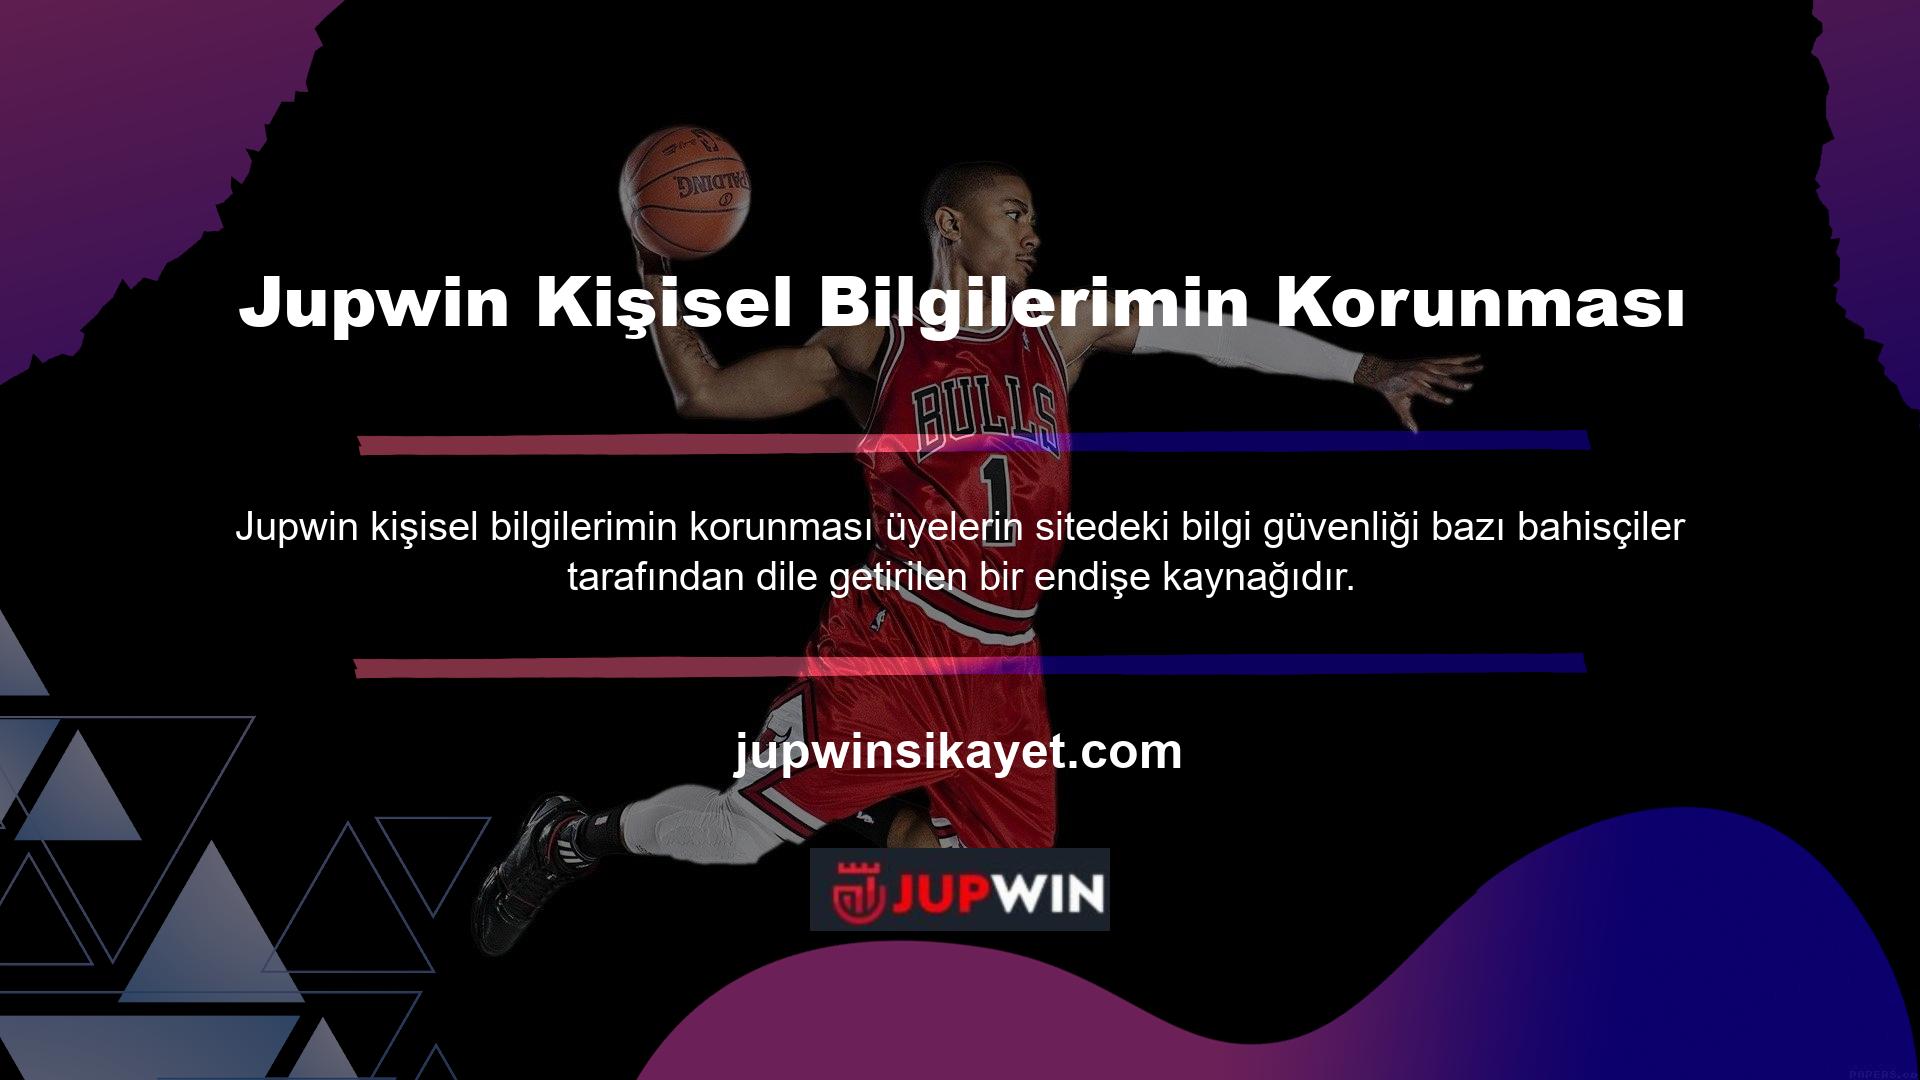 Jupwin ve diğer web sitelerinin, üyelikleri sırasında oyunculardan kişisel bilgiler aldığı bilinmektedir